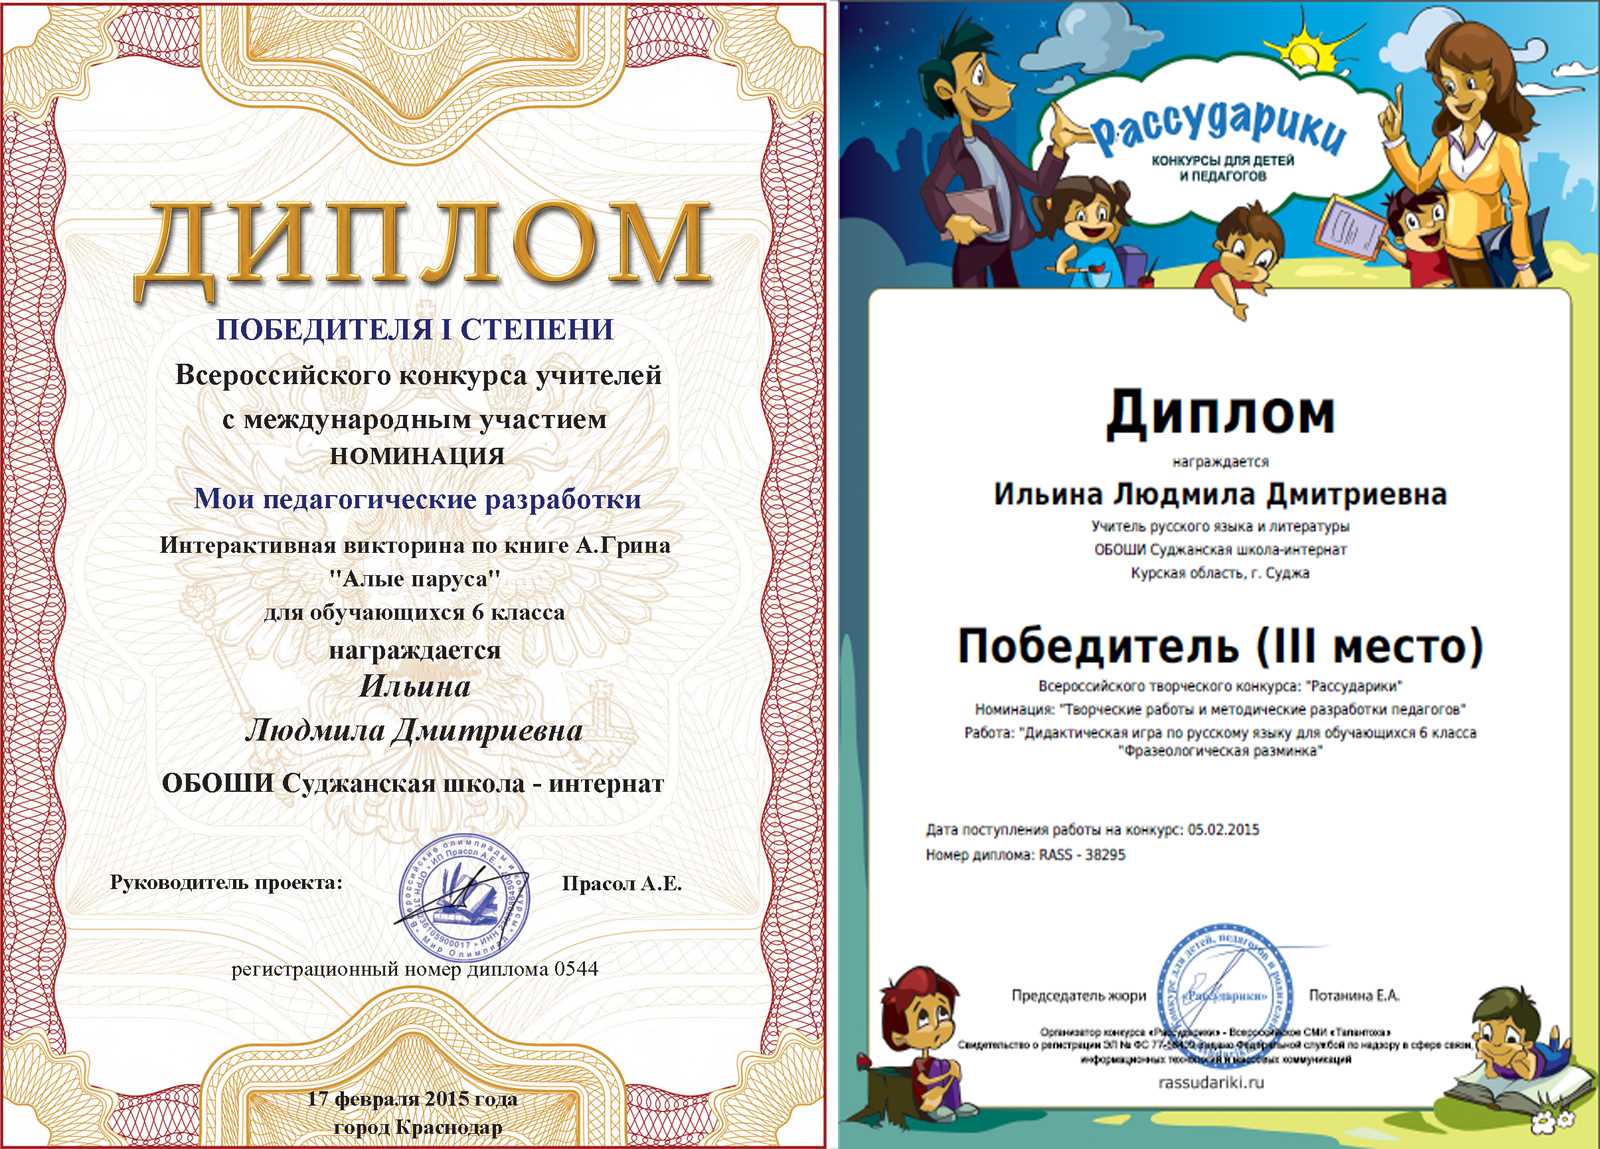 Педагог года — 2014 | учитель истории мустафина гулькей рафаэловна